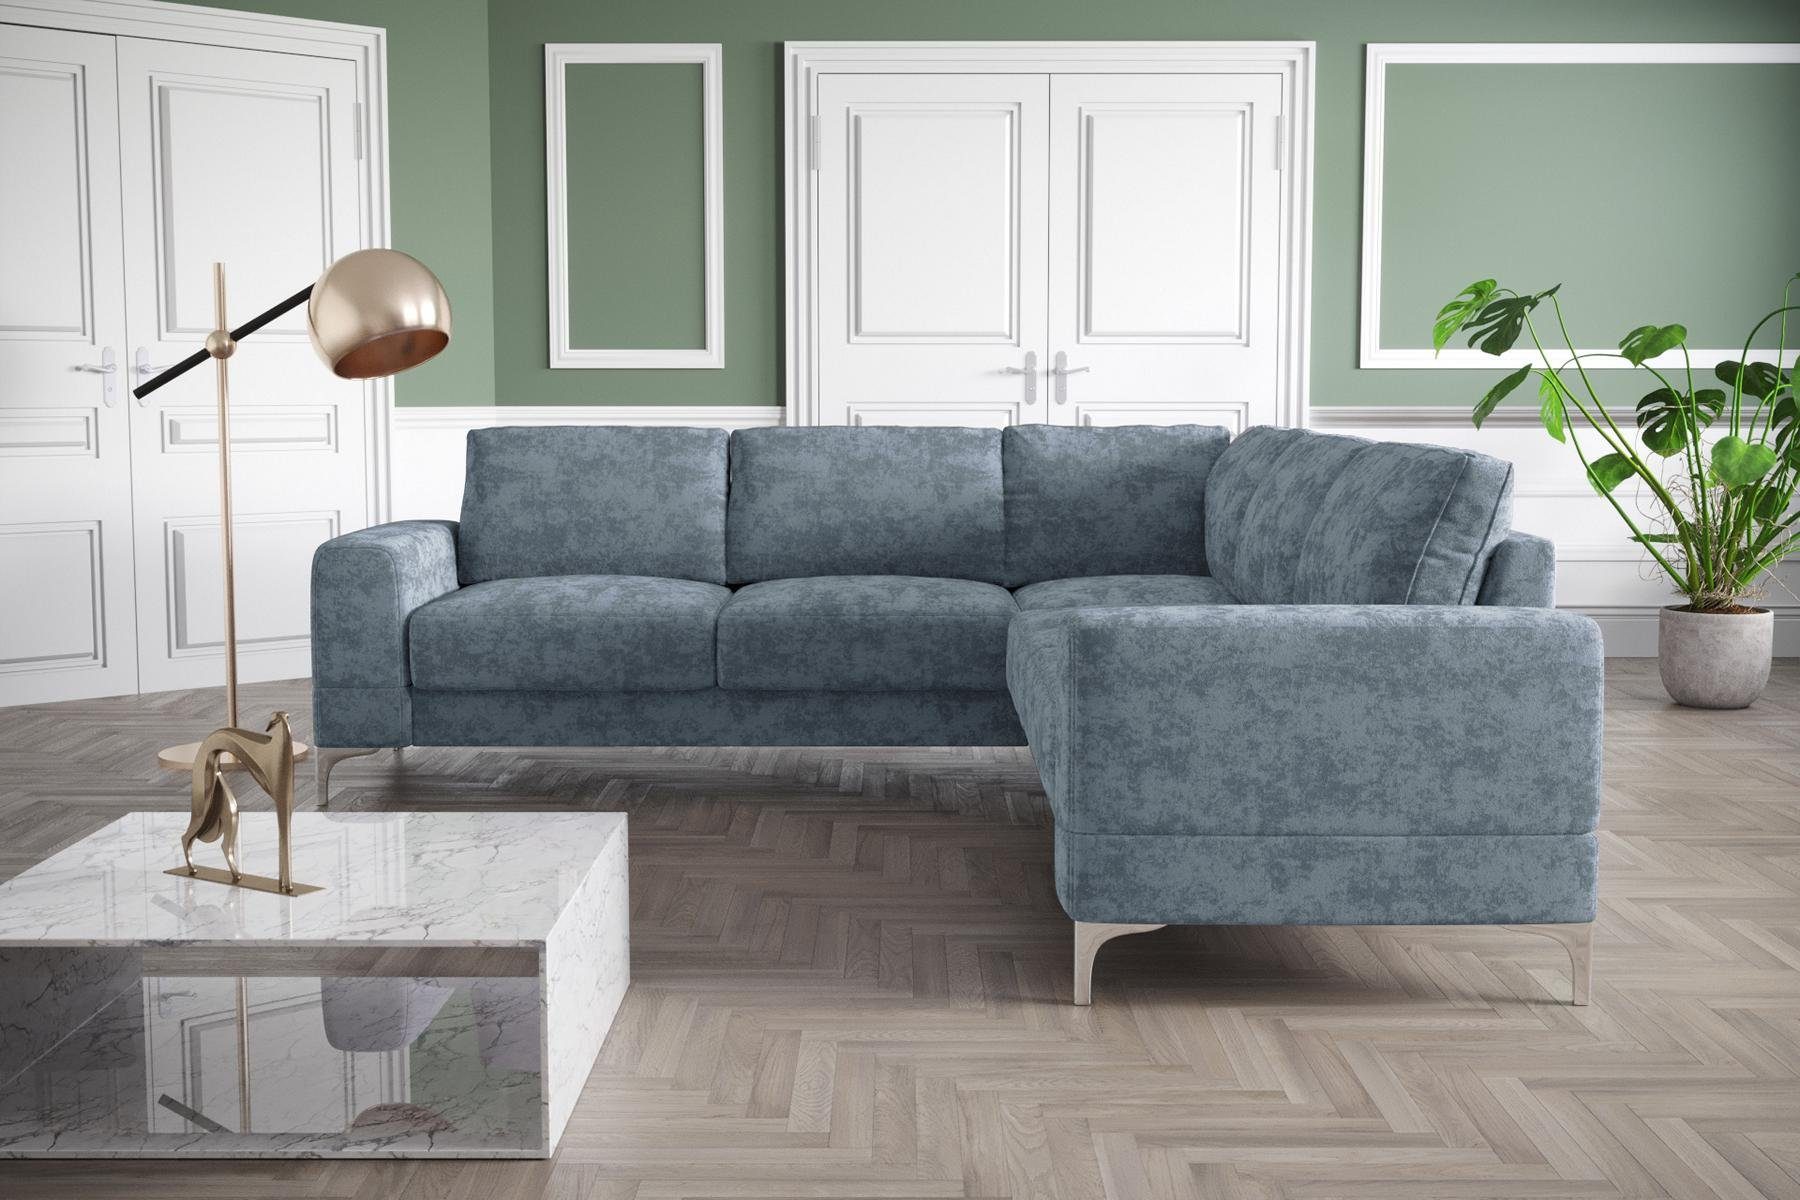 JVmoebel Ecksofa, Couch Ecksofa Textil Wohnzimmer Design Modern L-Form Türkis Möbel Grau